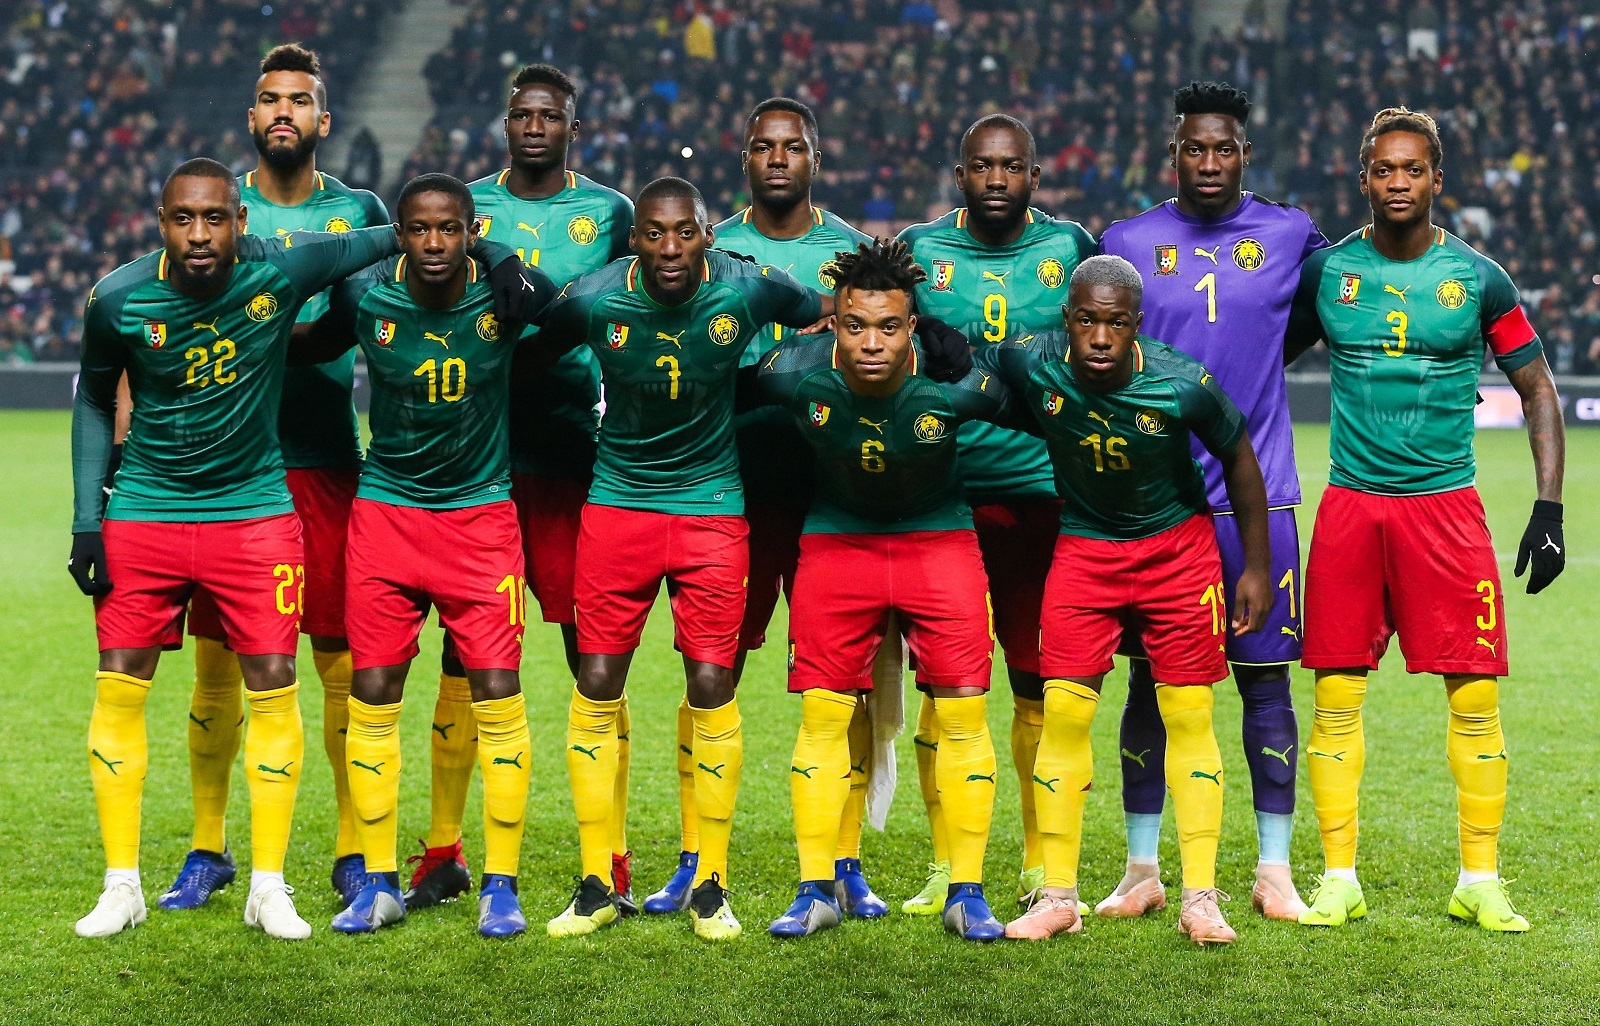 Le Cameroun dans le top 10 des nations les plus titrés de l’histoire